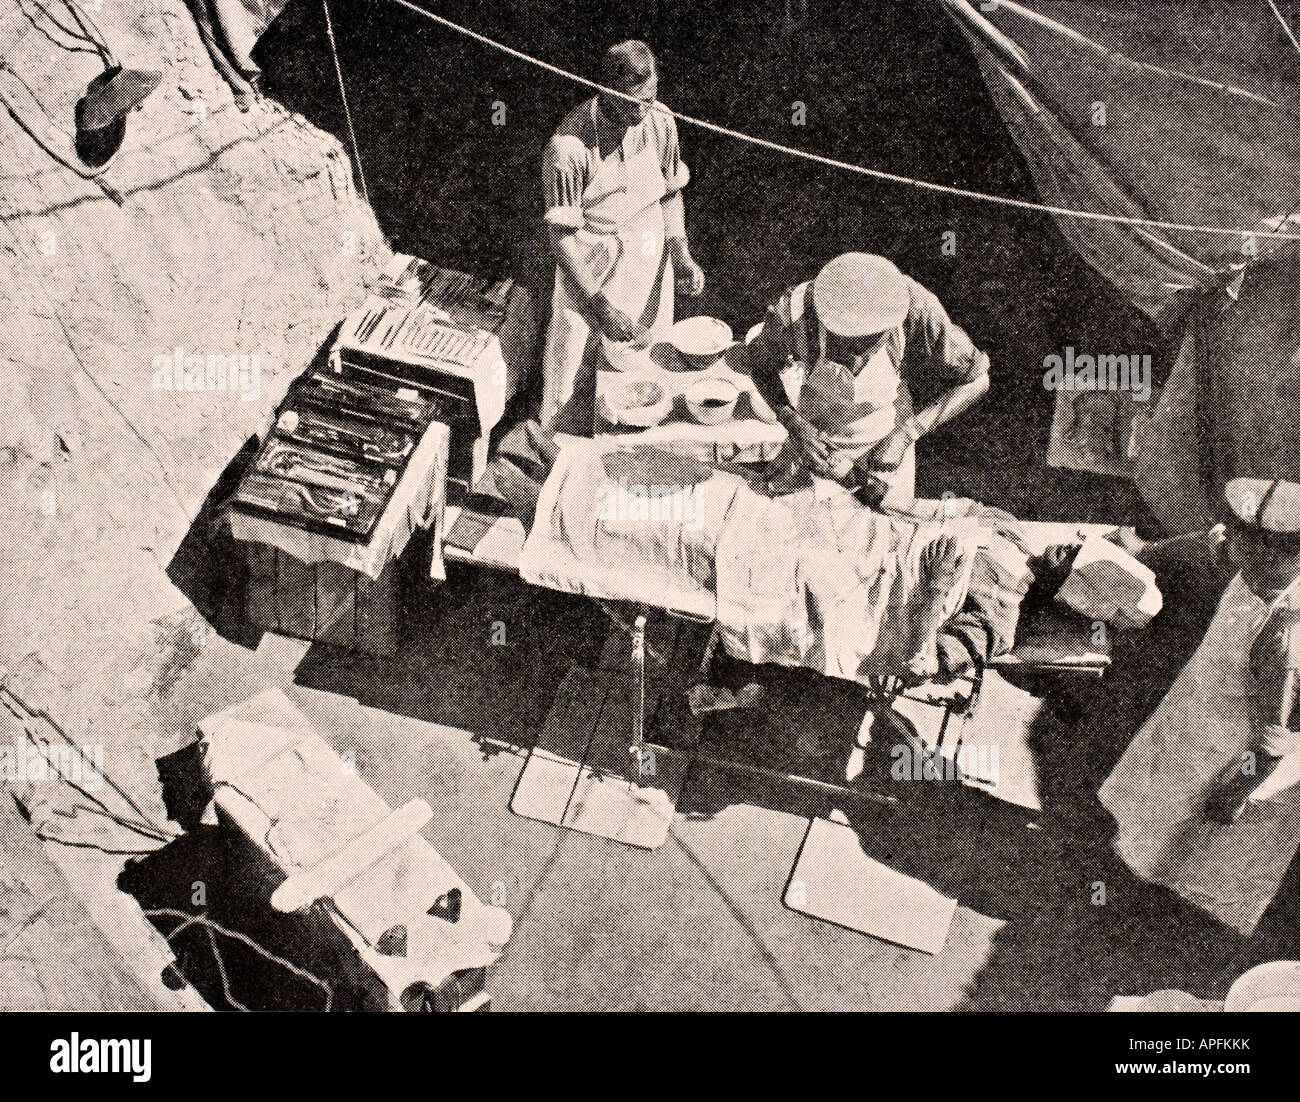 Cirugía de campo en la Península de Gallipoli, Turquía 1915 durante la primera Guerra Mundial. El cirujano está quitando una bala del brazo de un soldado. Foto de stock